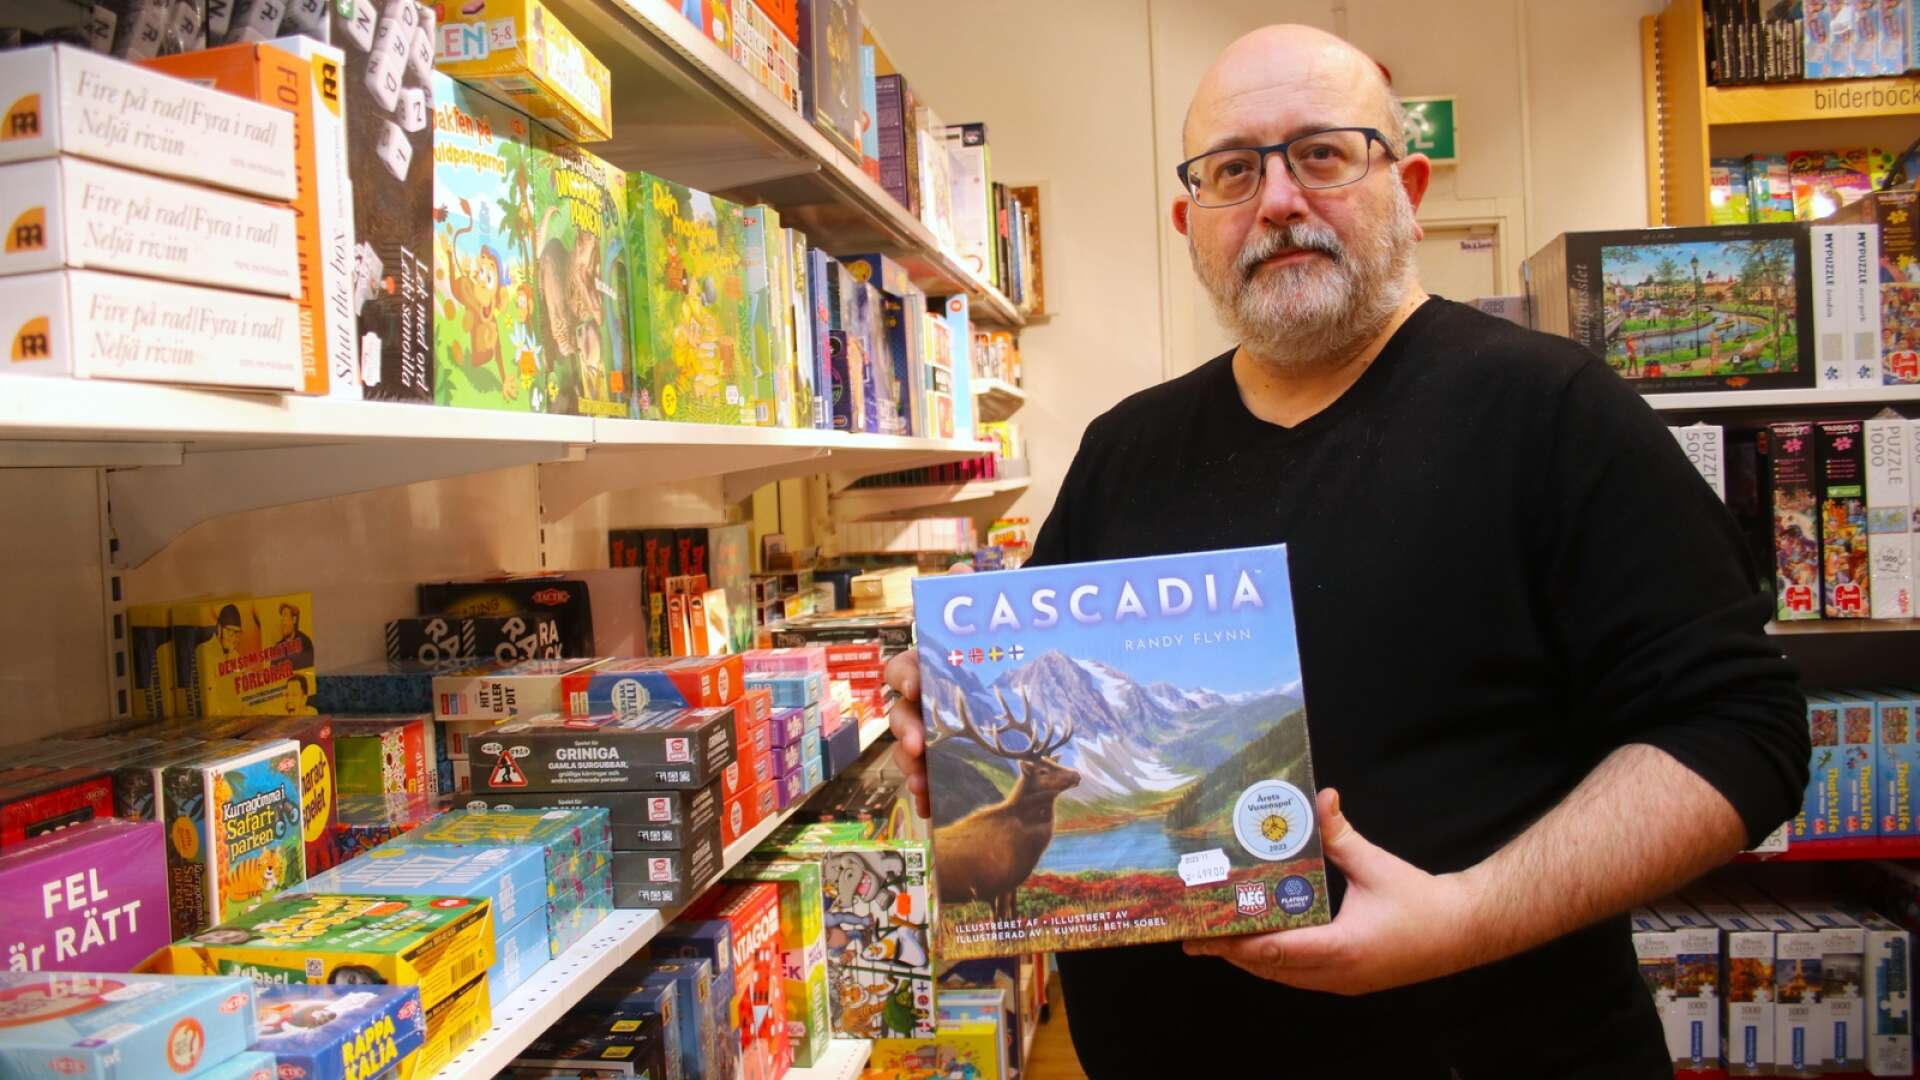 Sällskapsspelet har utsetts till årets julklapp. Något som glädjer Jürgen Picha på Åmåls bokhandel. I handen håller han spelet Cascadia som i år erhöll ”Guldtärningen” för årets bästa sällskapsspel i kategorin vuxenspel.